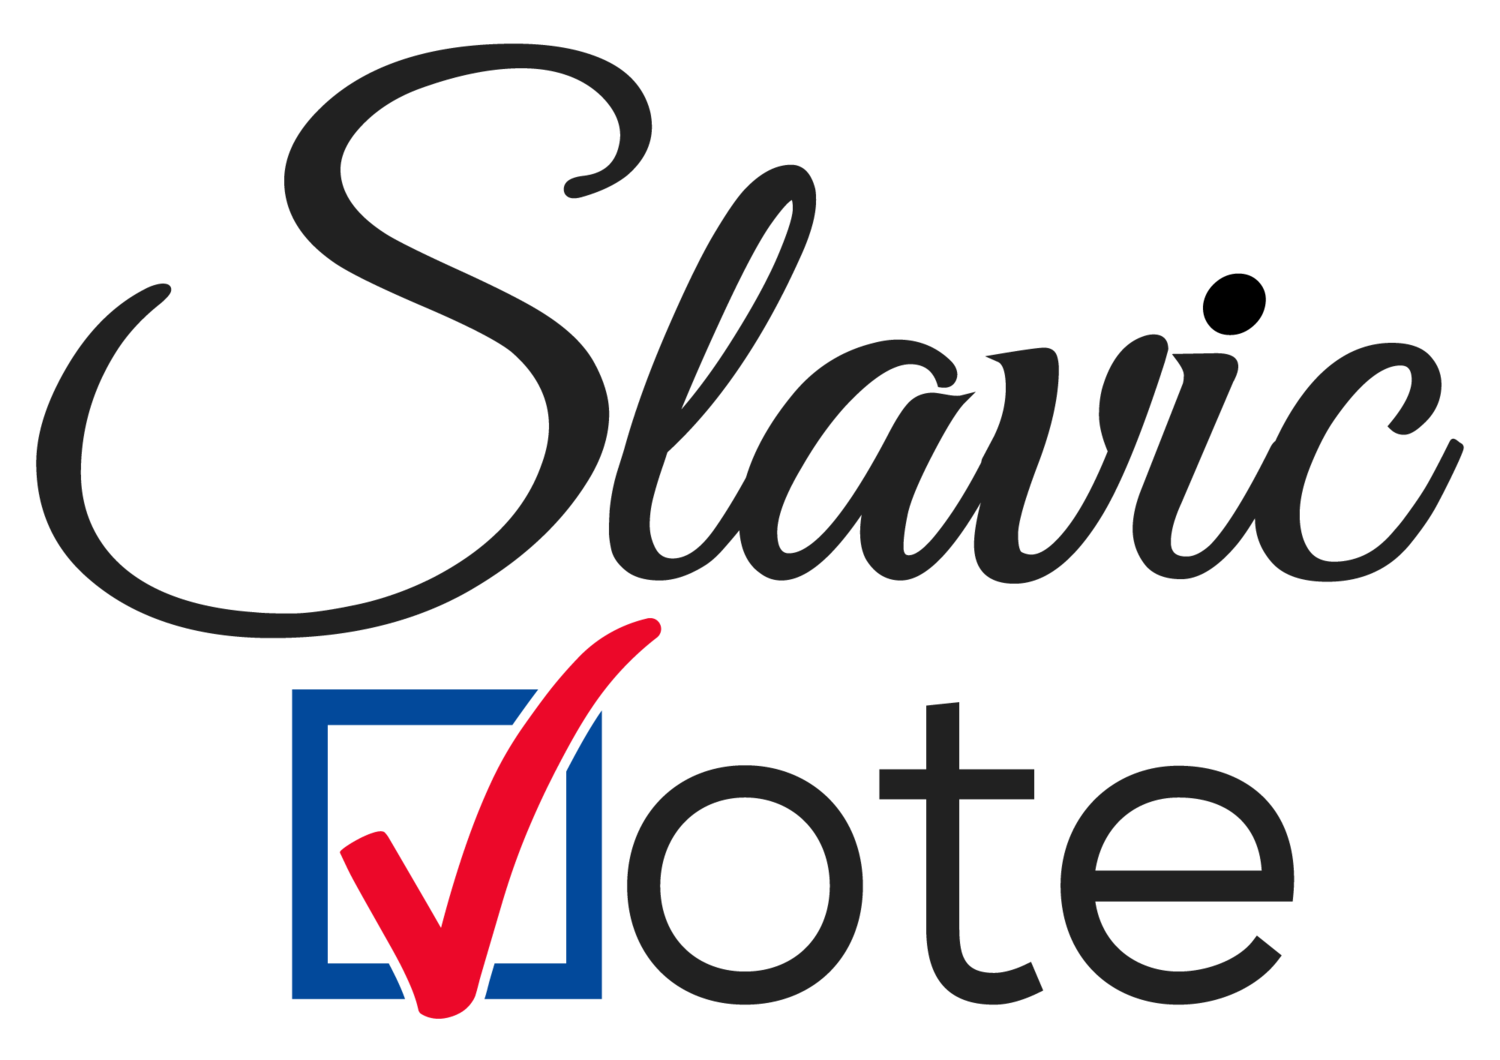 Slavic Vote